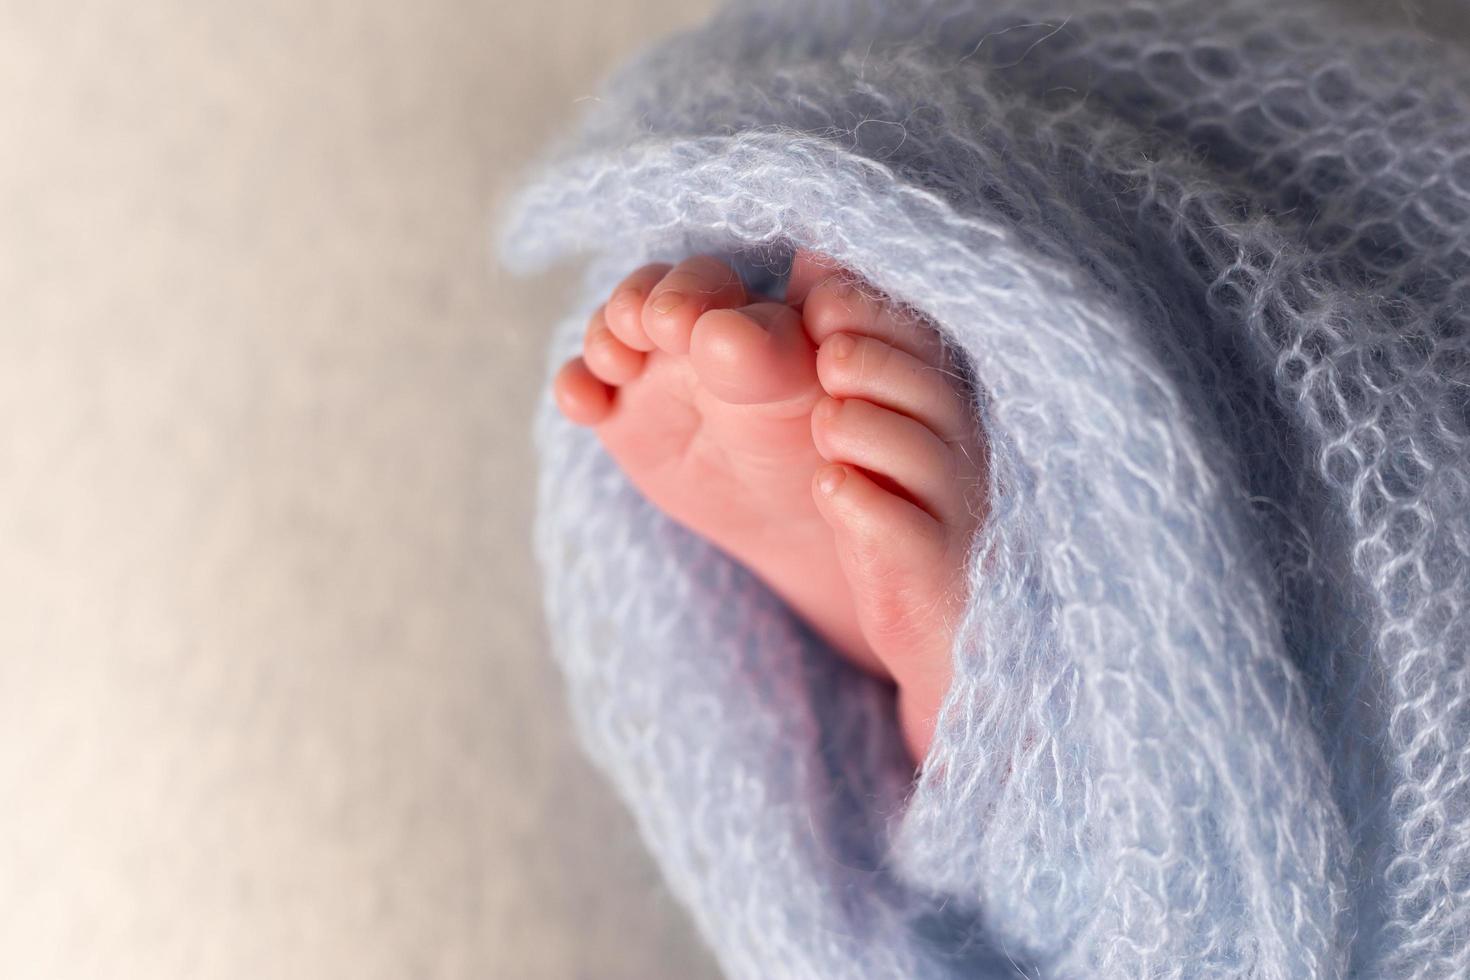 pies de bebé recién nacido sobre un fondo de avena envuelto en una manta de punto foto